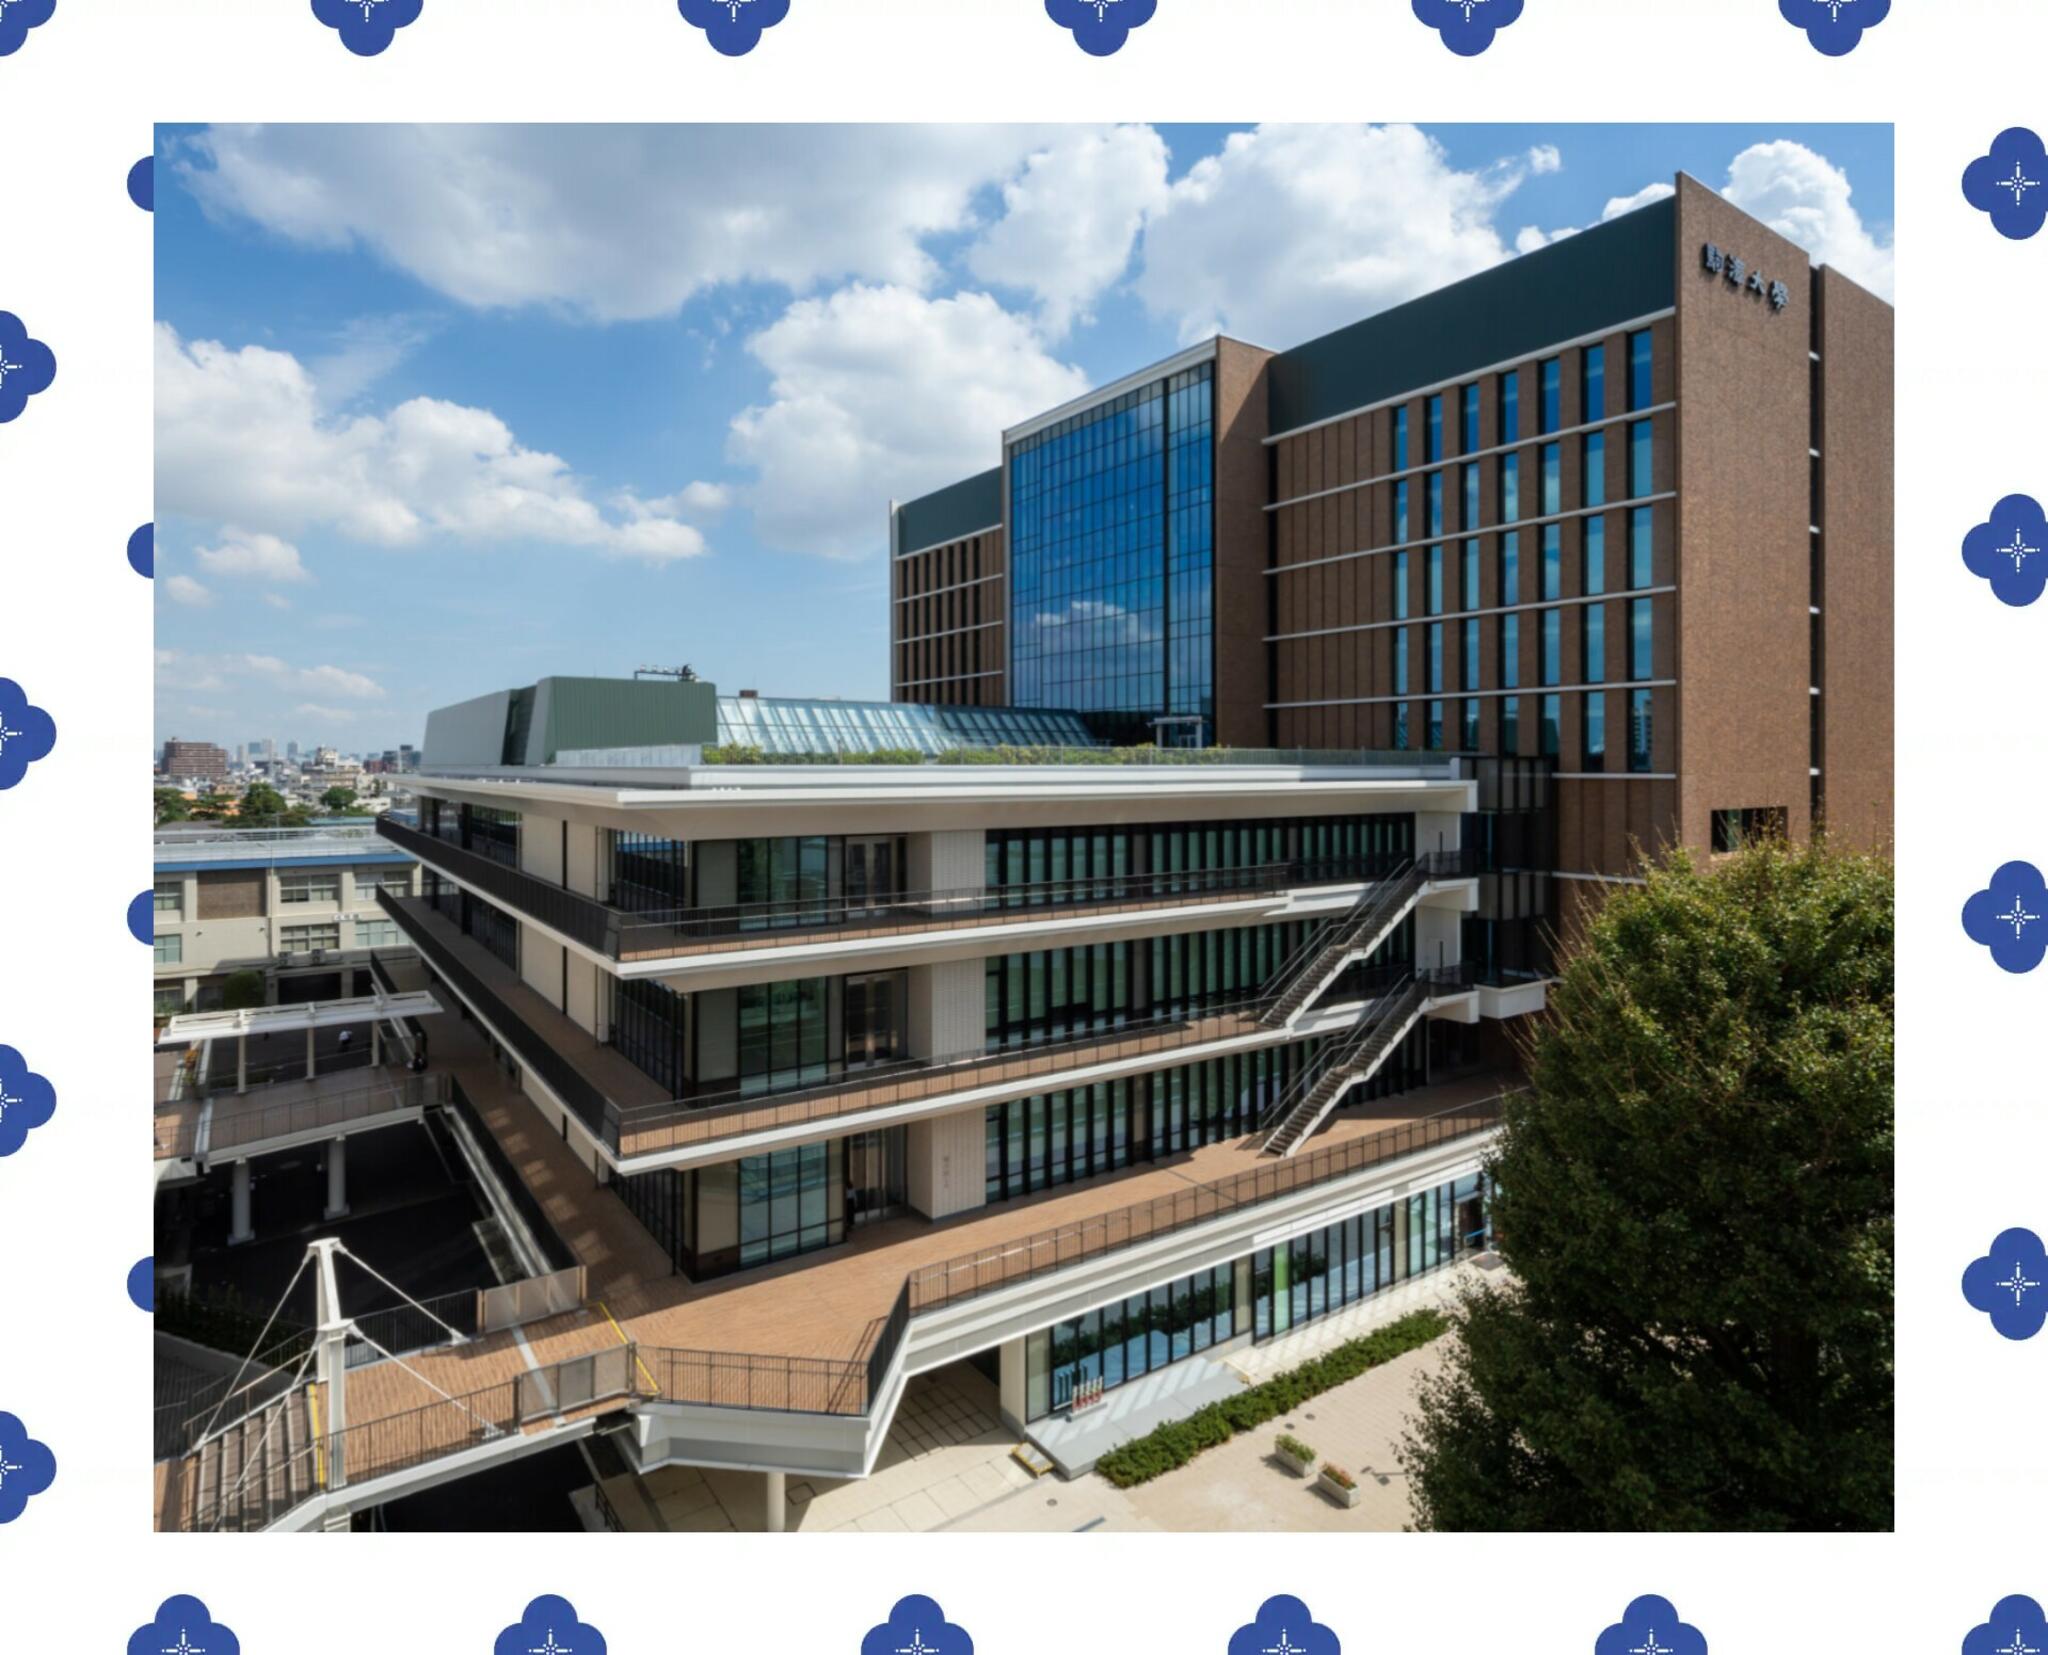 駒澤大学 駒沢キャンパス - 世田谷区駒沢/大学・大学院 | Yahoo!マップ